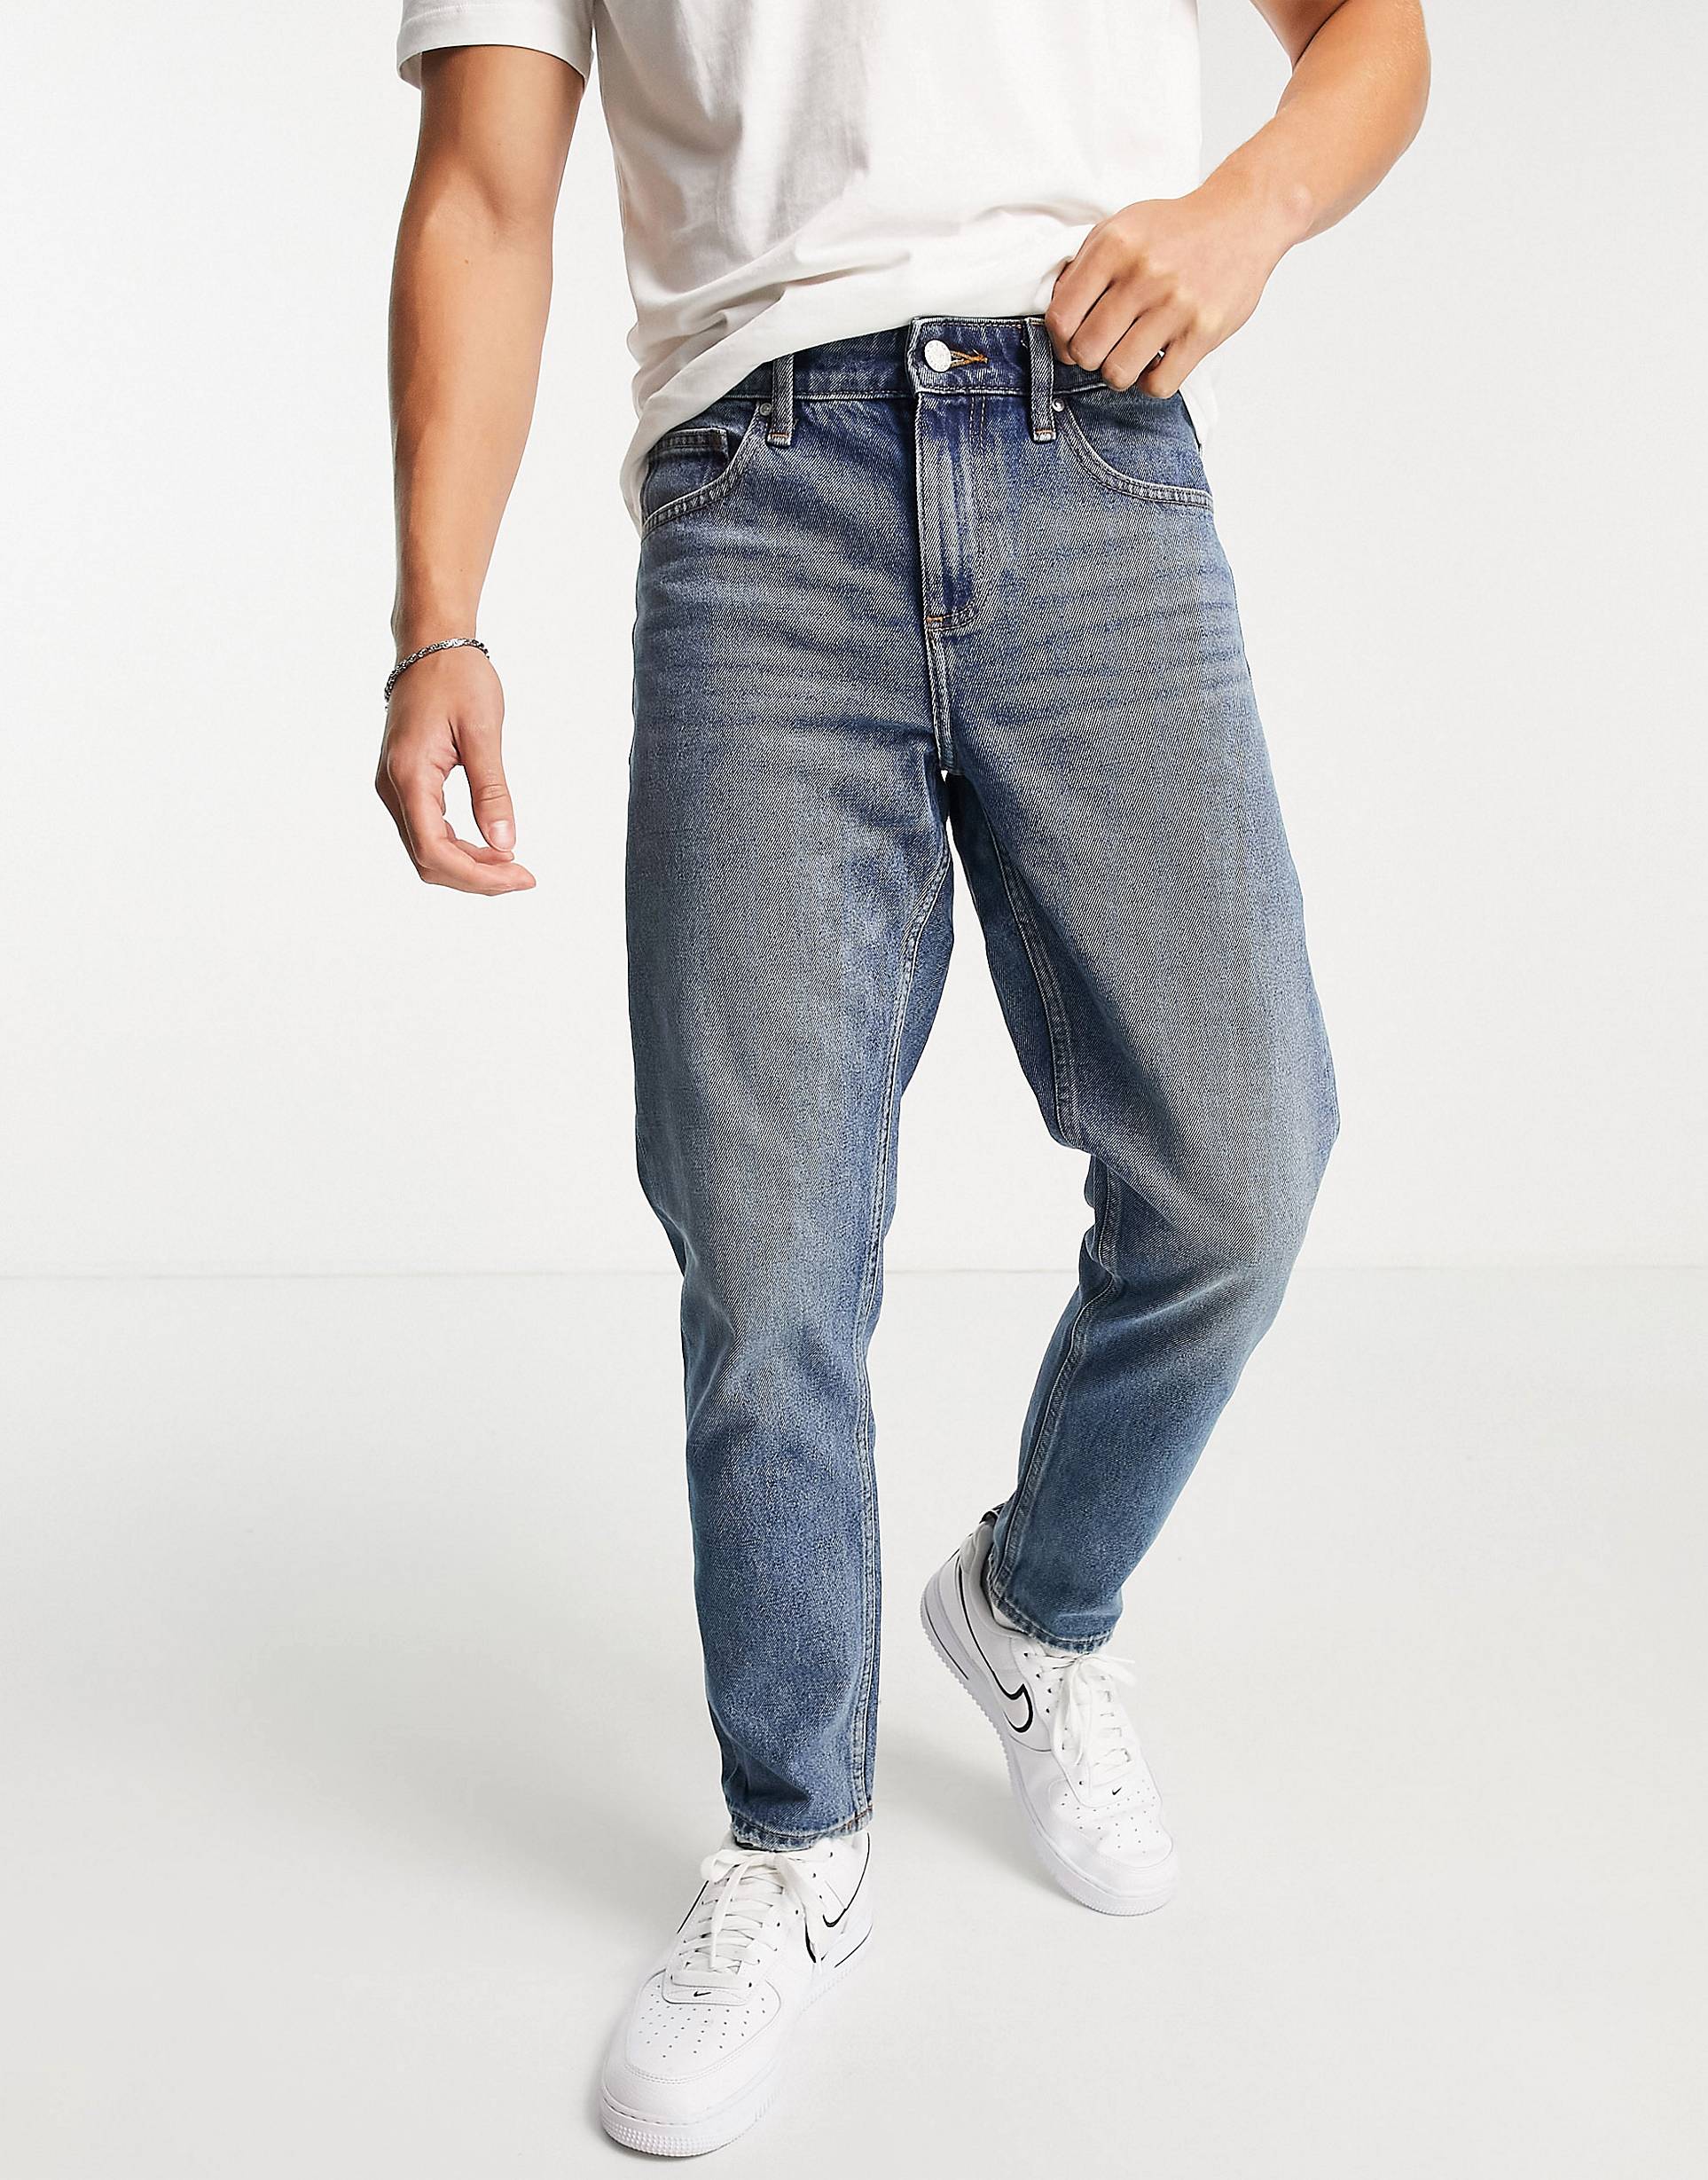 Синие джинсы в винтажном стиле ASOS DESIGN синие джинсы скинни asos в винтажном стиле